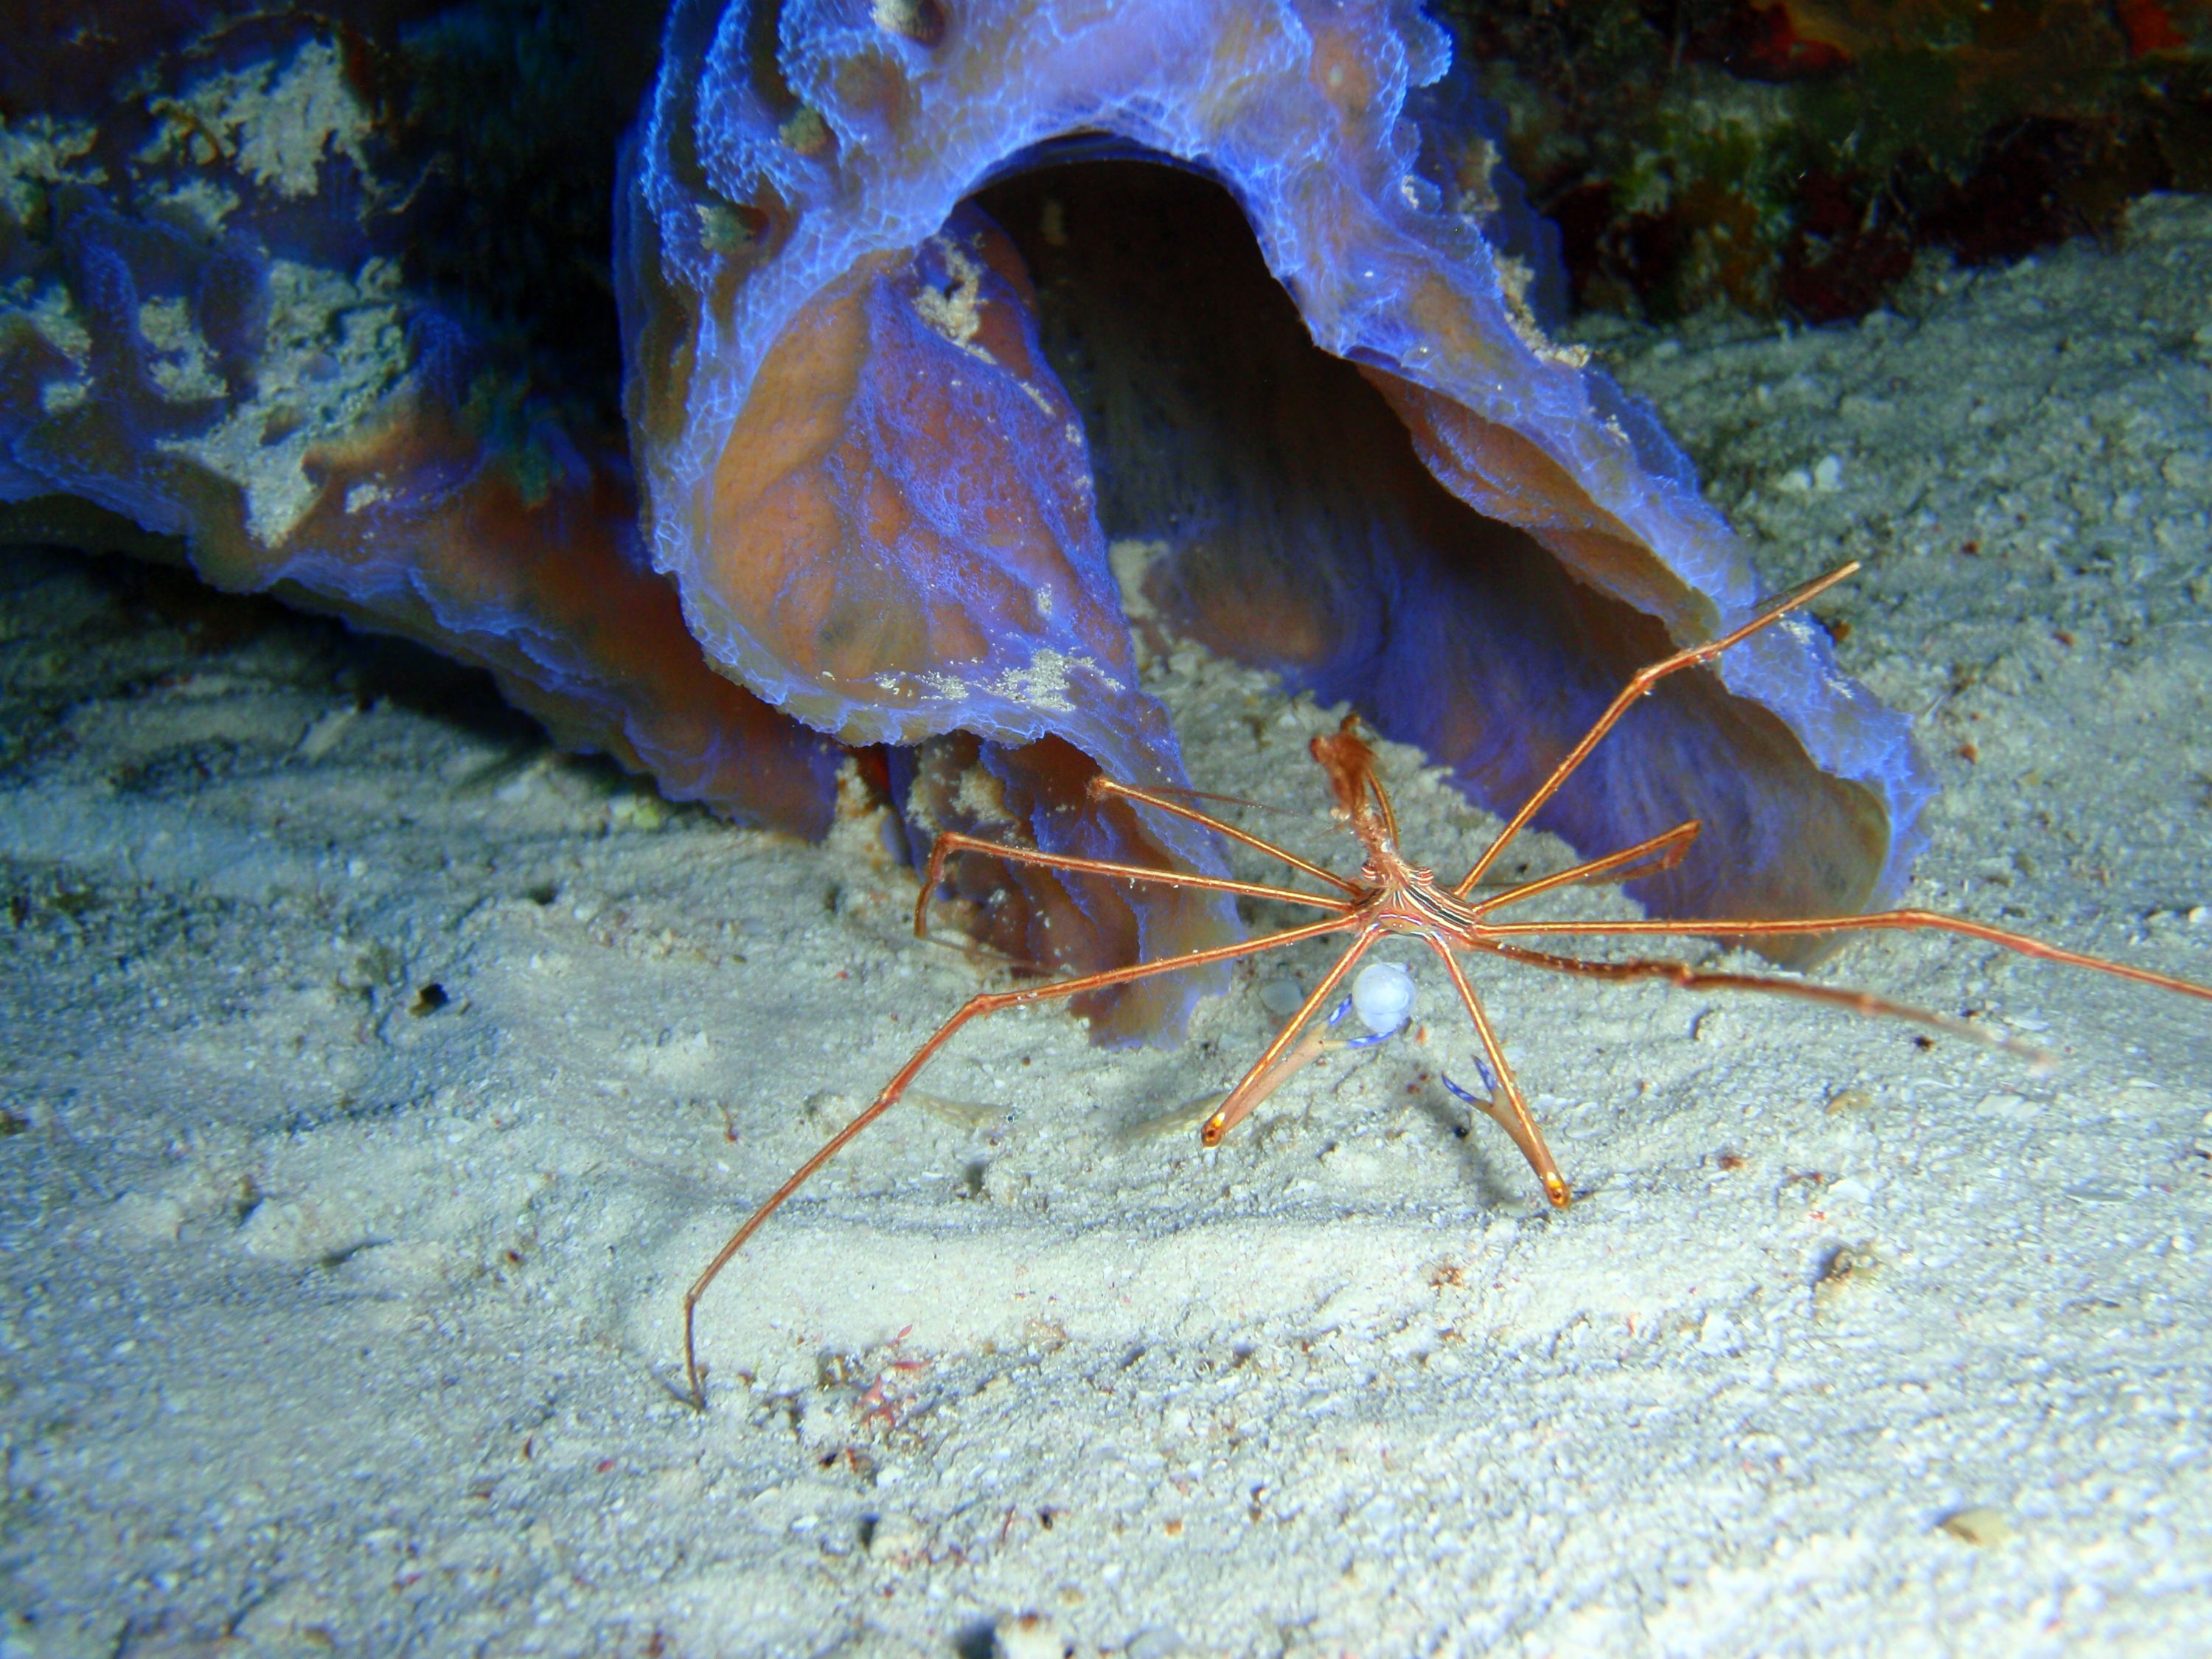 arrow crab with egg sac